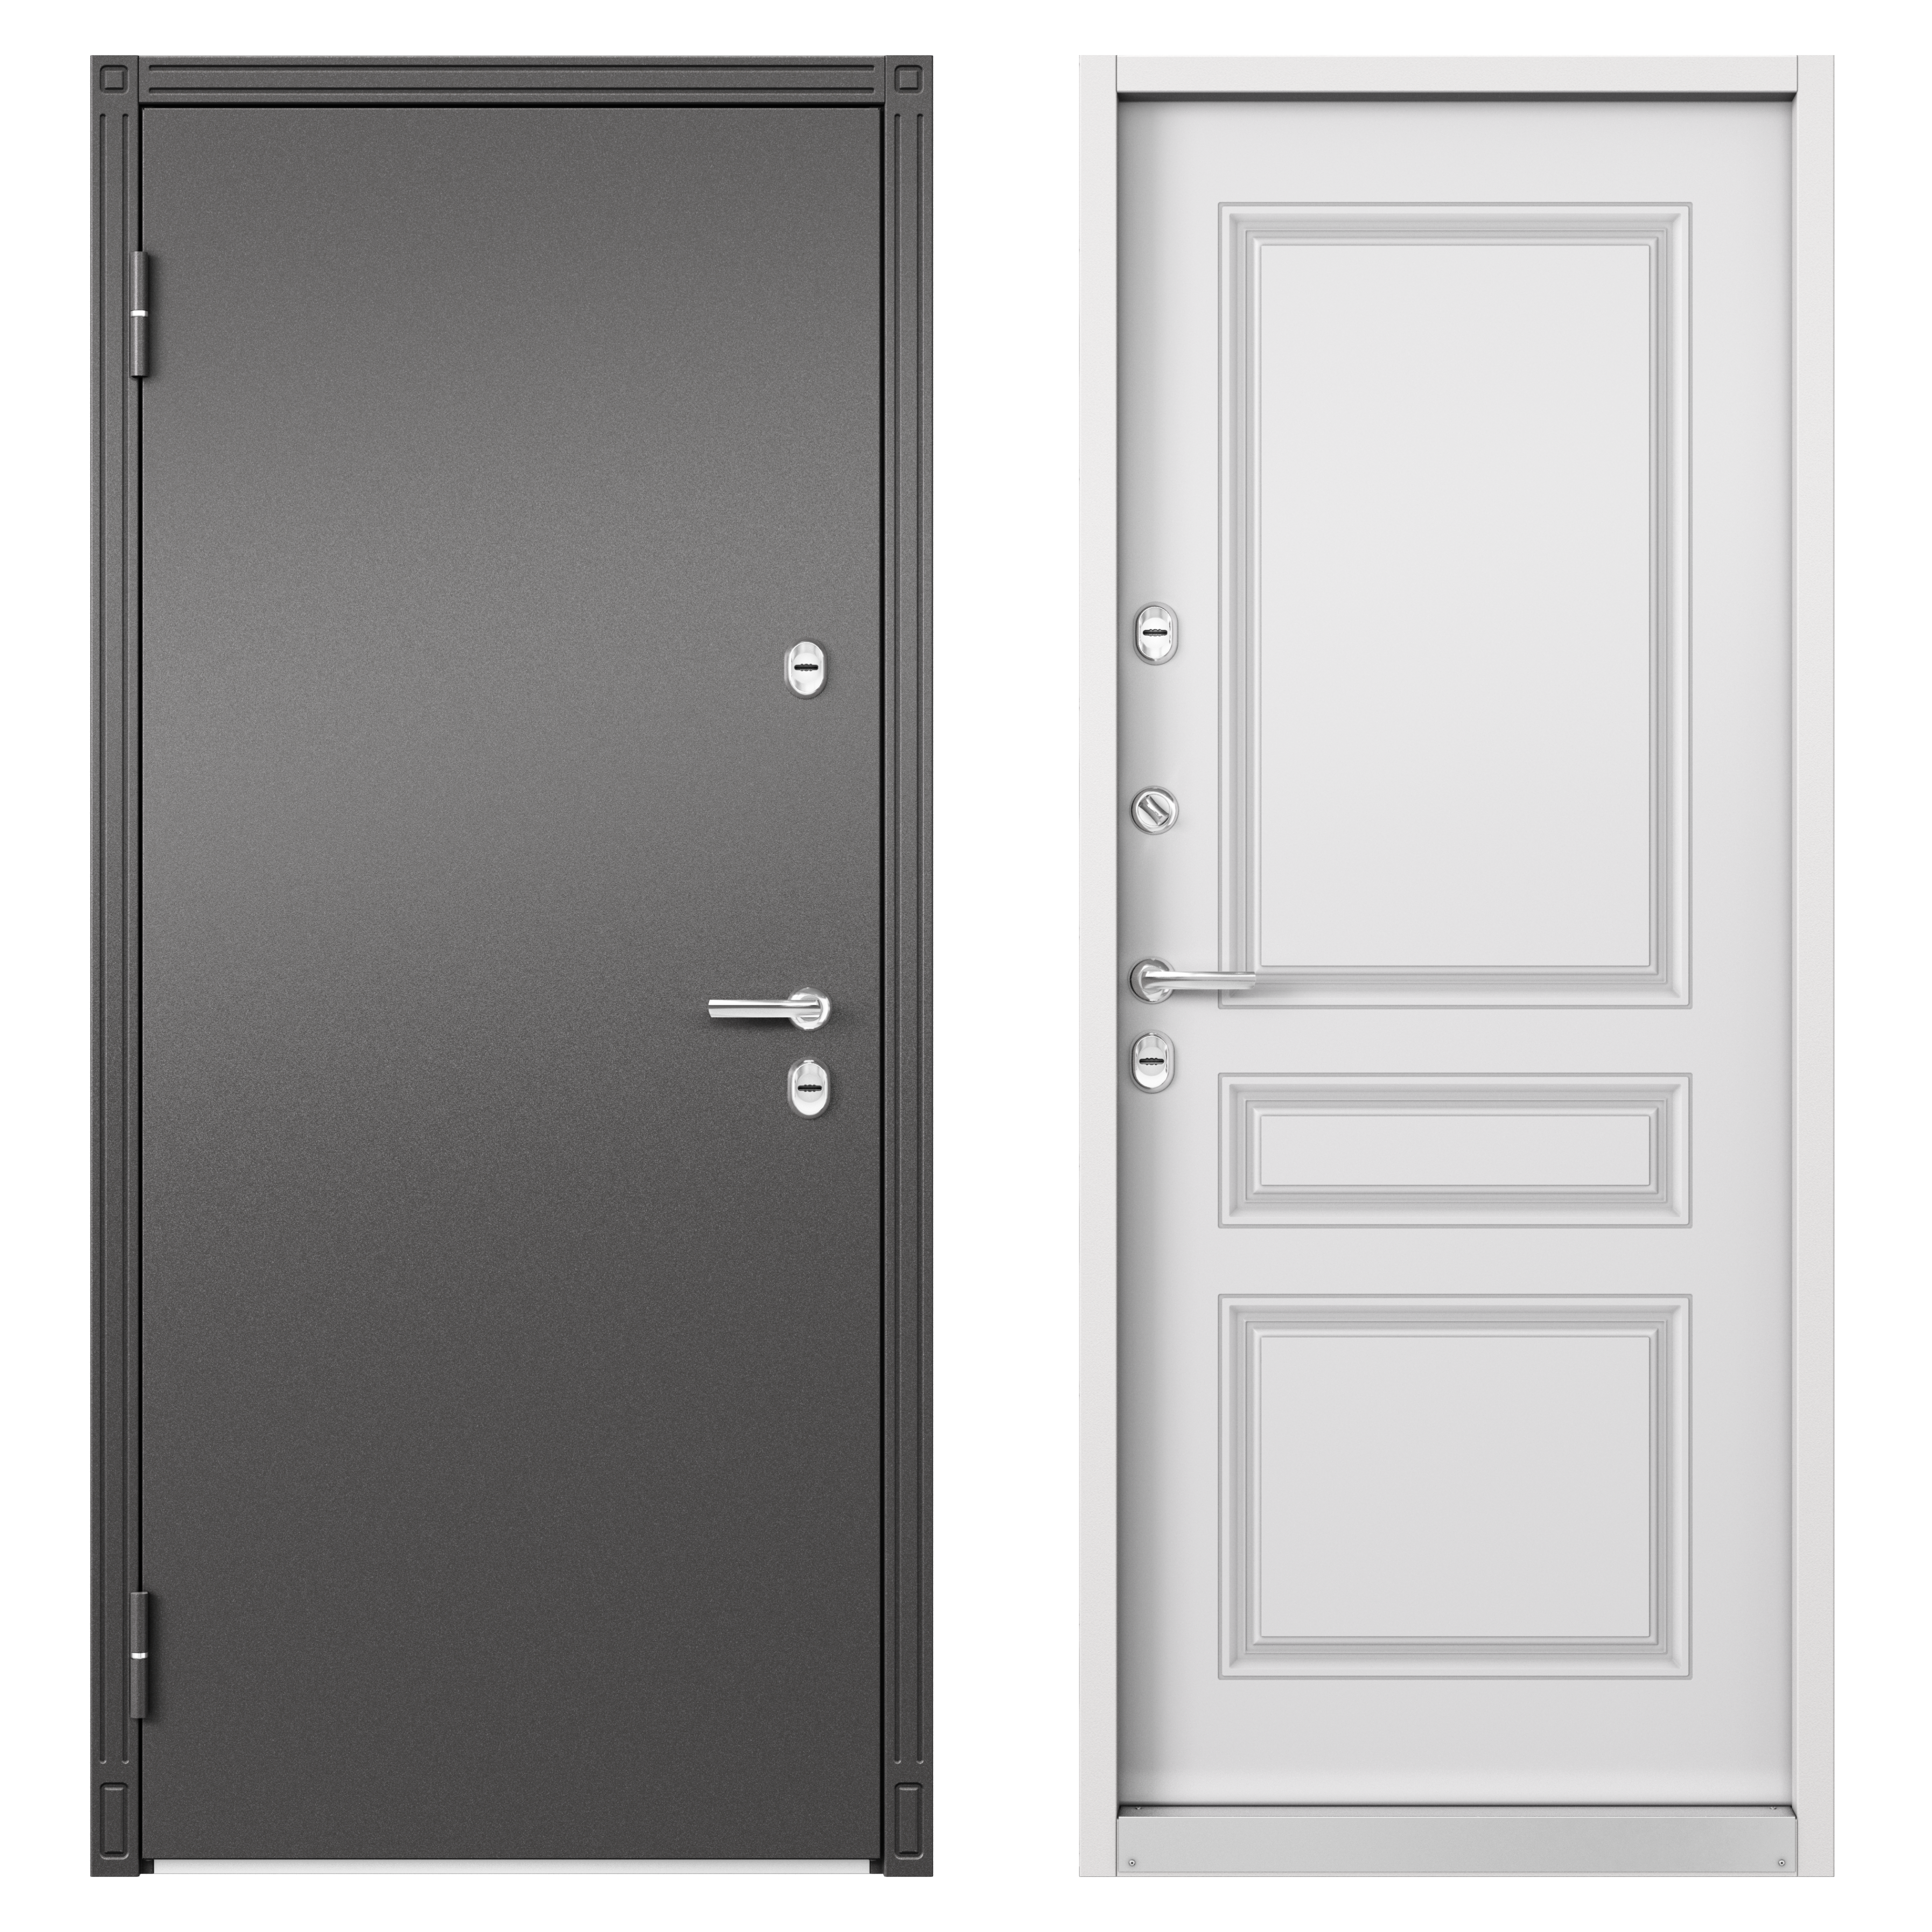 82858724 Дверь входная металлическая Термо С-2 эмаль, Стелла 950 мм, левая, цвет белый STLM-0037170 TOREX